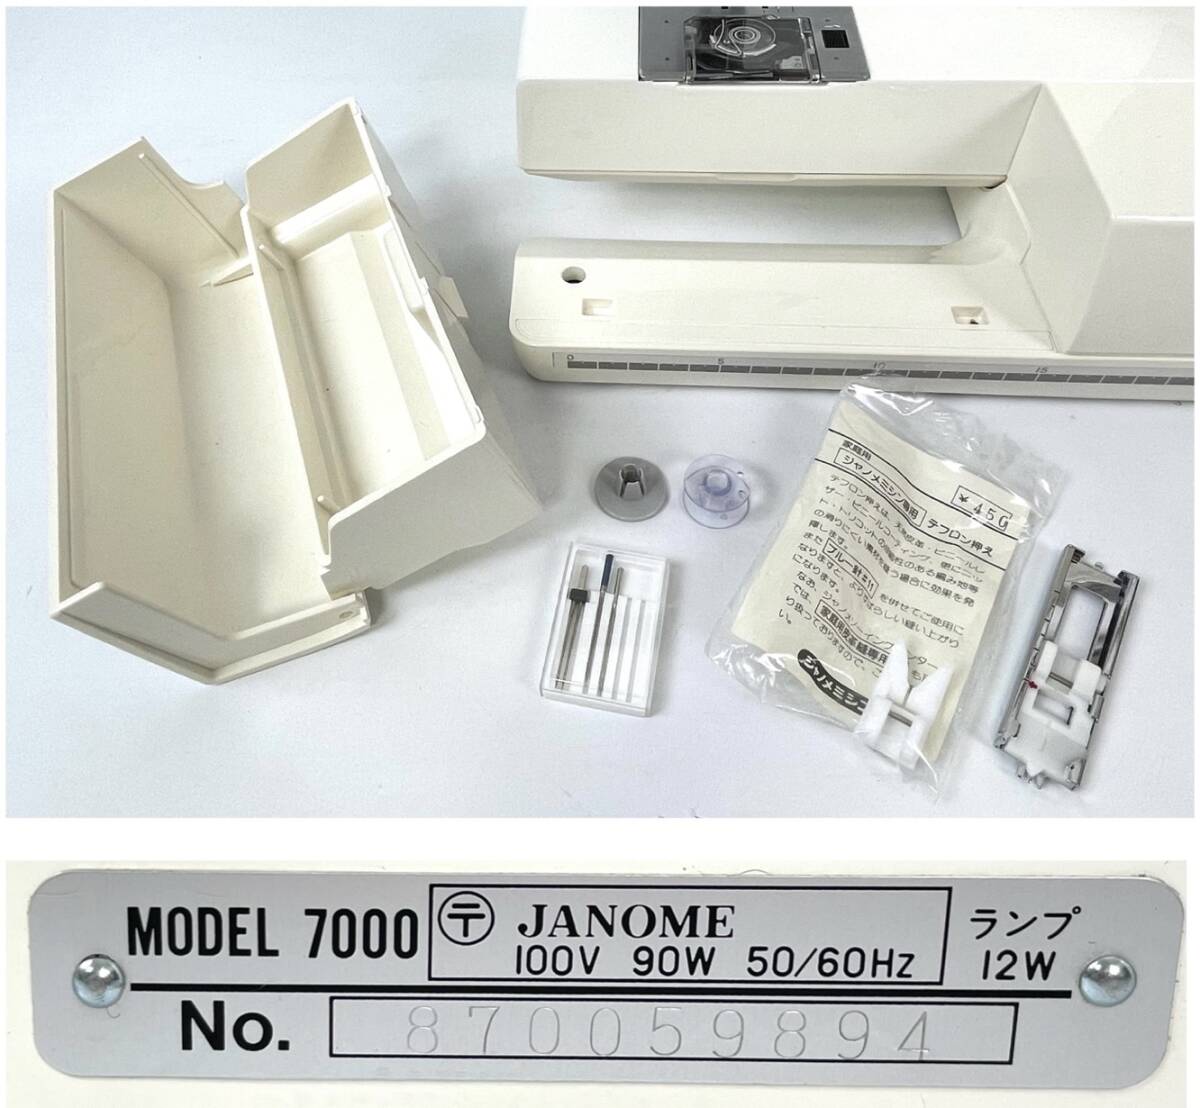 JANOME Janome компьютер швейная машина Sensor Craft 7000 сенсор craft электризация проверка settled принадлежности недостача б/у Junk текущее состояние товар возвращенние товара не возможно 